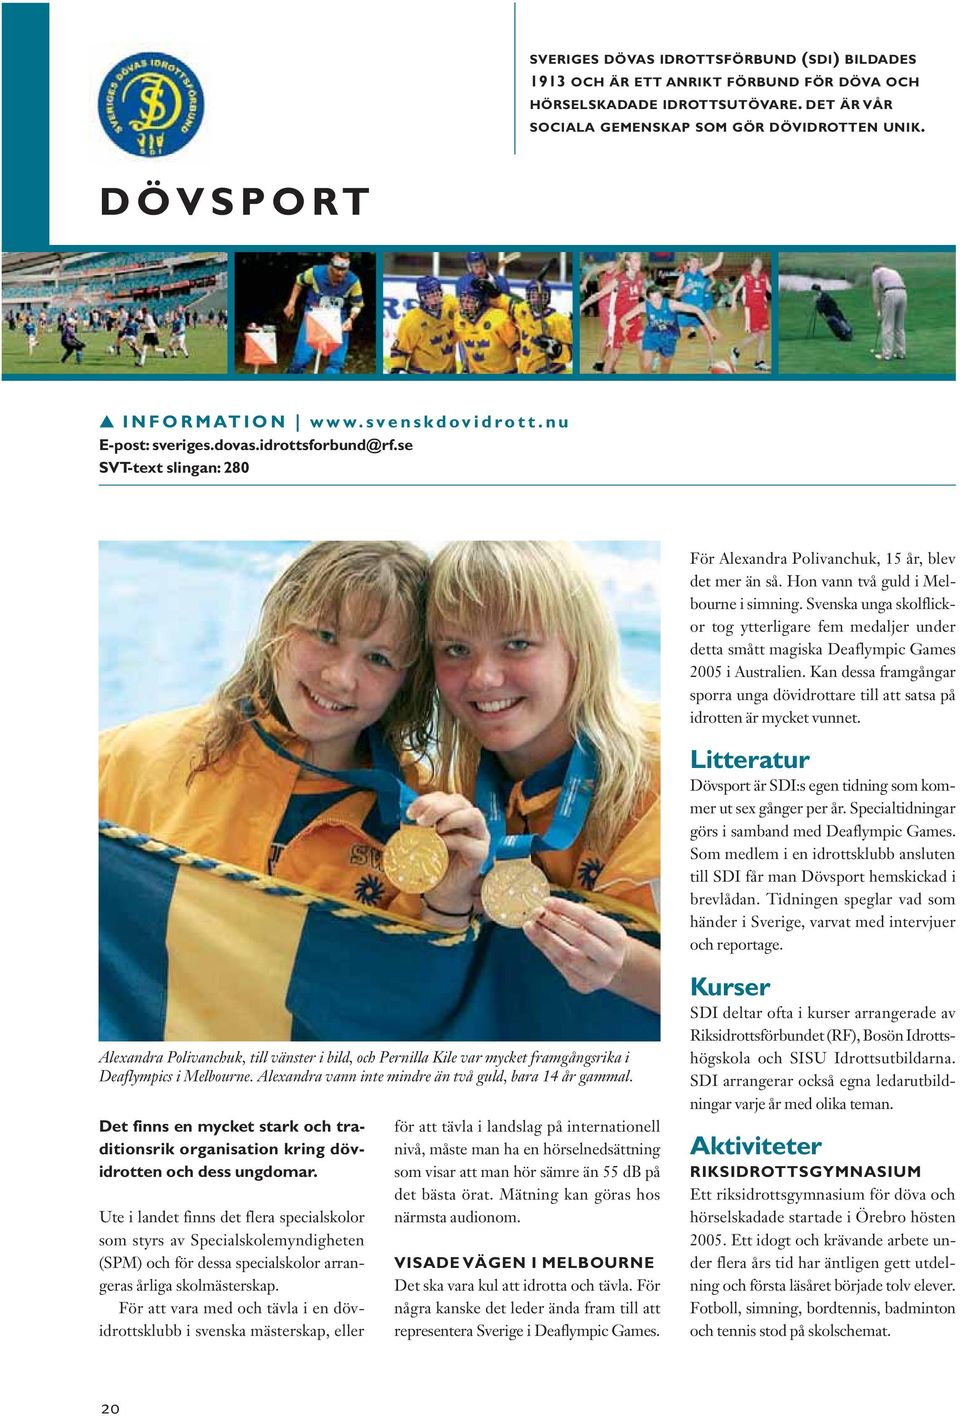 Svenska unga skolflickor tog ytterligare fem medaljer under detta smått magiska Deaflympic Games 2005 i Australien.